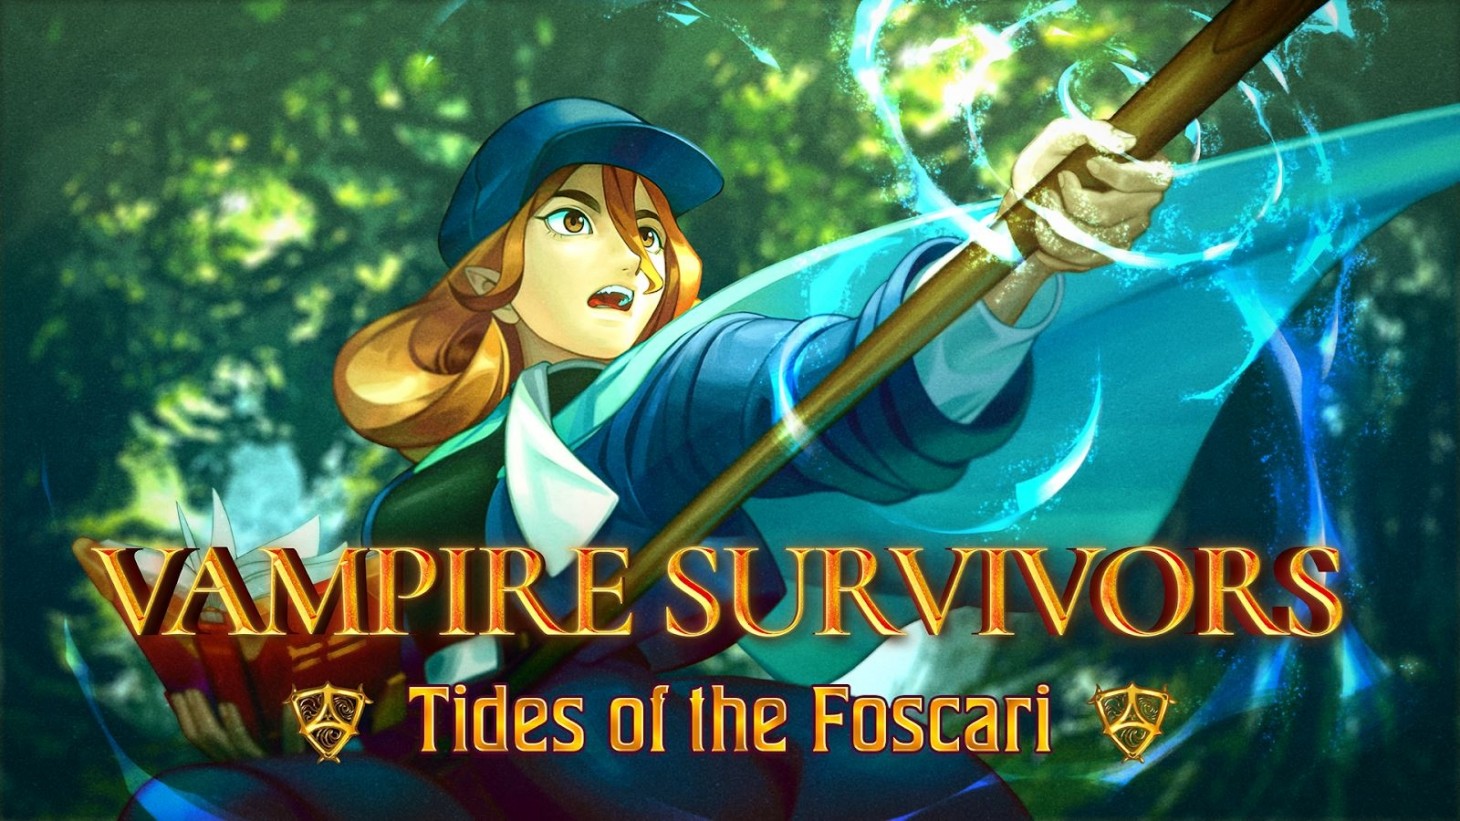 Vampire Survivors wird ein neues Erweiterungspaket Tides of the Foscari erhalten, das $2 kosten wird